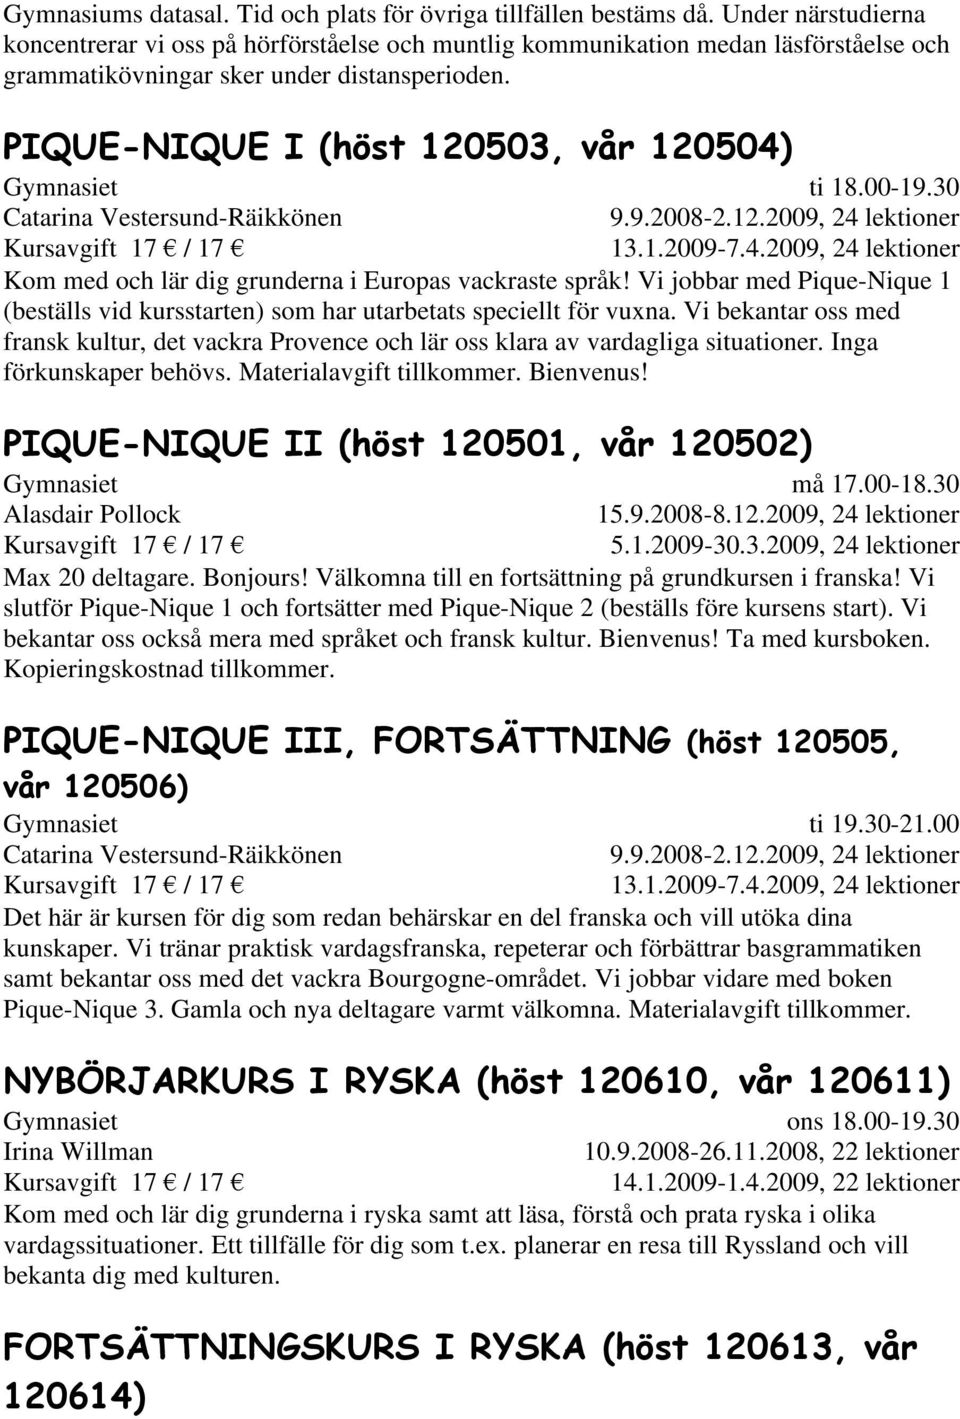 PIQUE-NIQUE I (höst 120503, vår 120504) Catarina Vestersund-Räikkönen ti 18.00-19.30 9.9.2008-2.12.2009, 24 lektioner 13.1.2009-7.4.2009, 24 lektioner Kom med och lär dig grunderna i Europas vackraste språk!